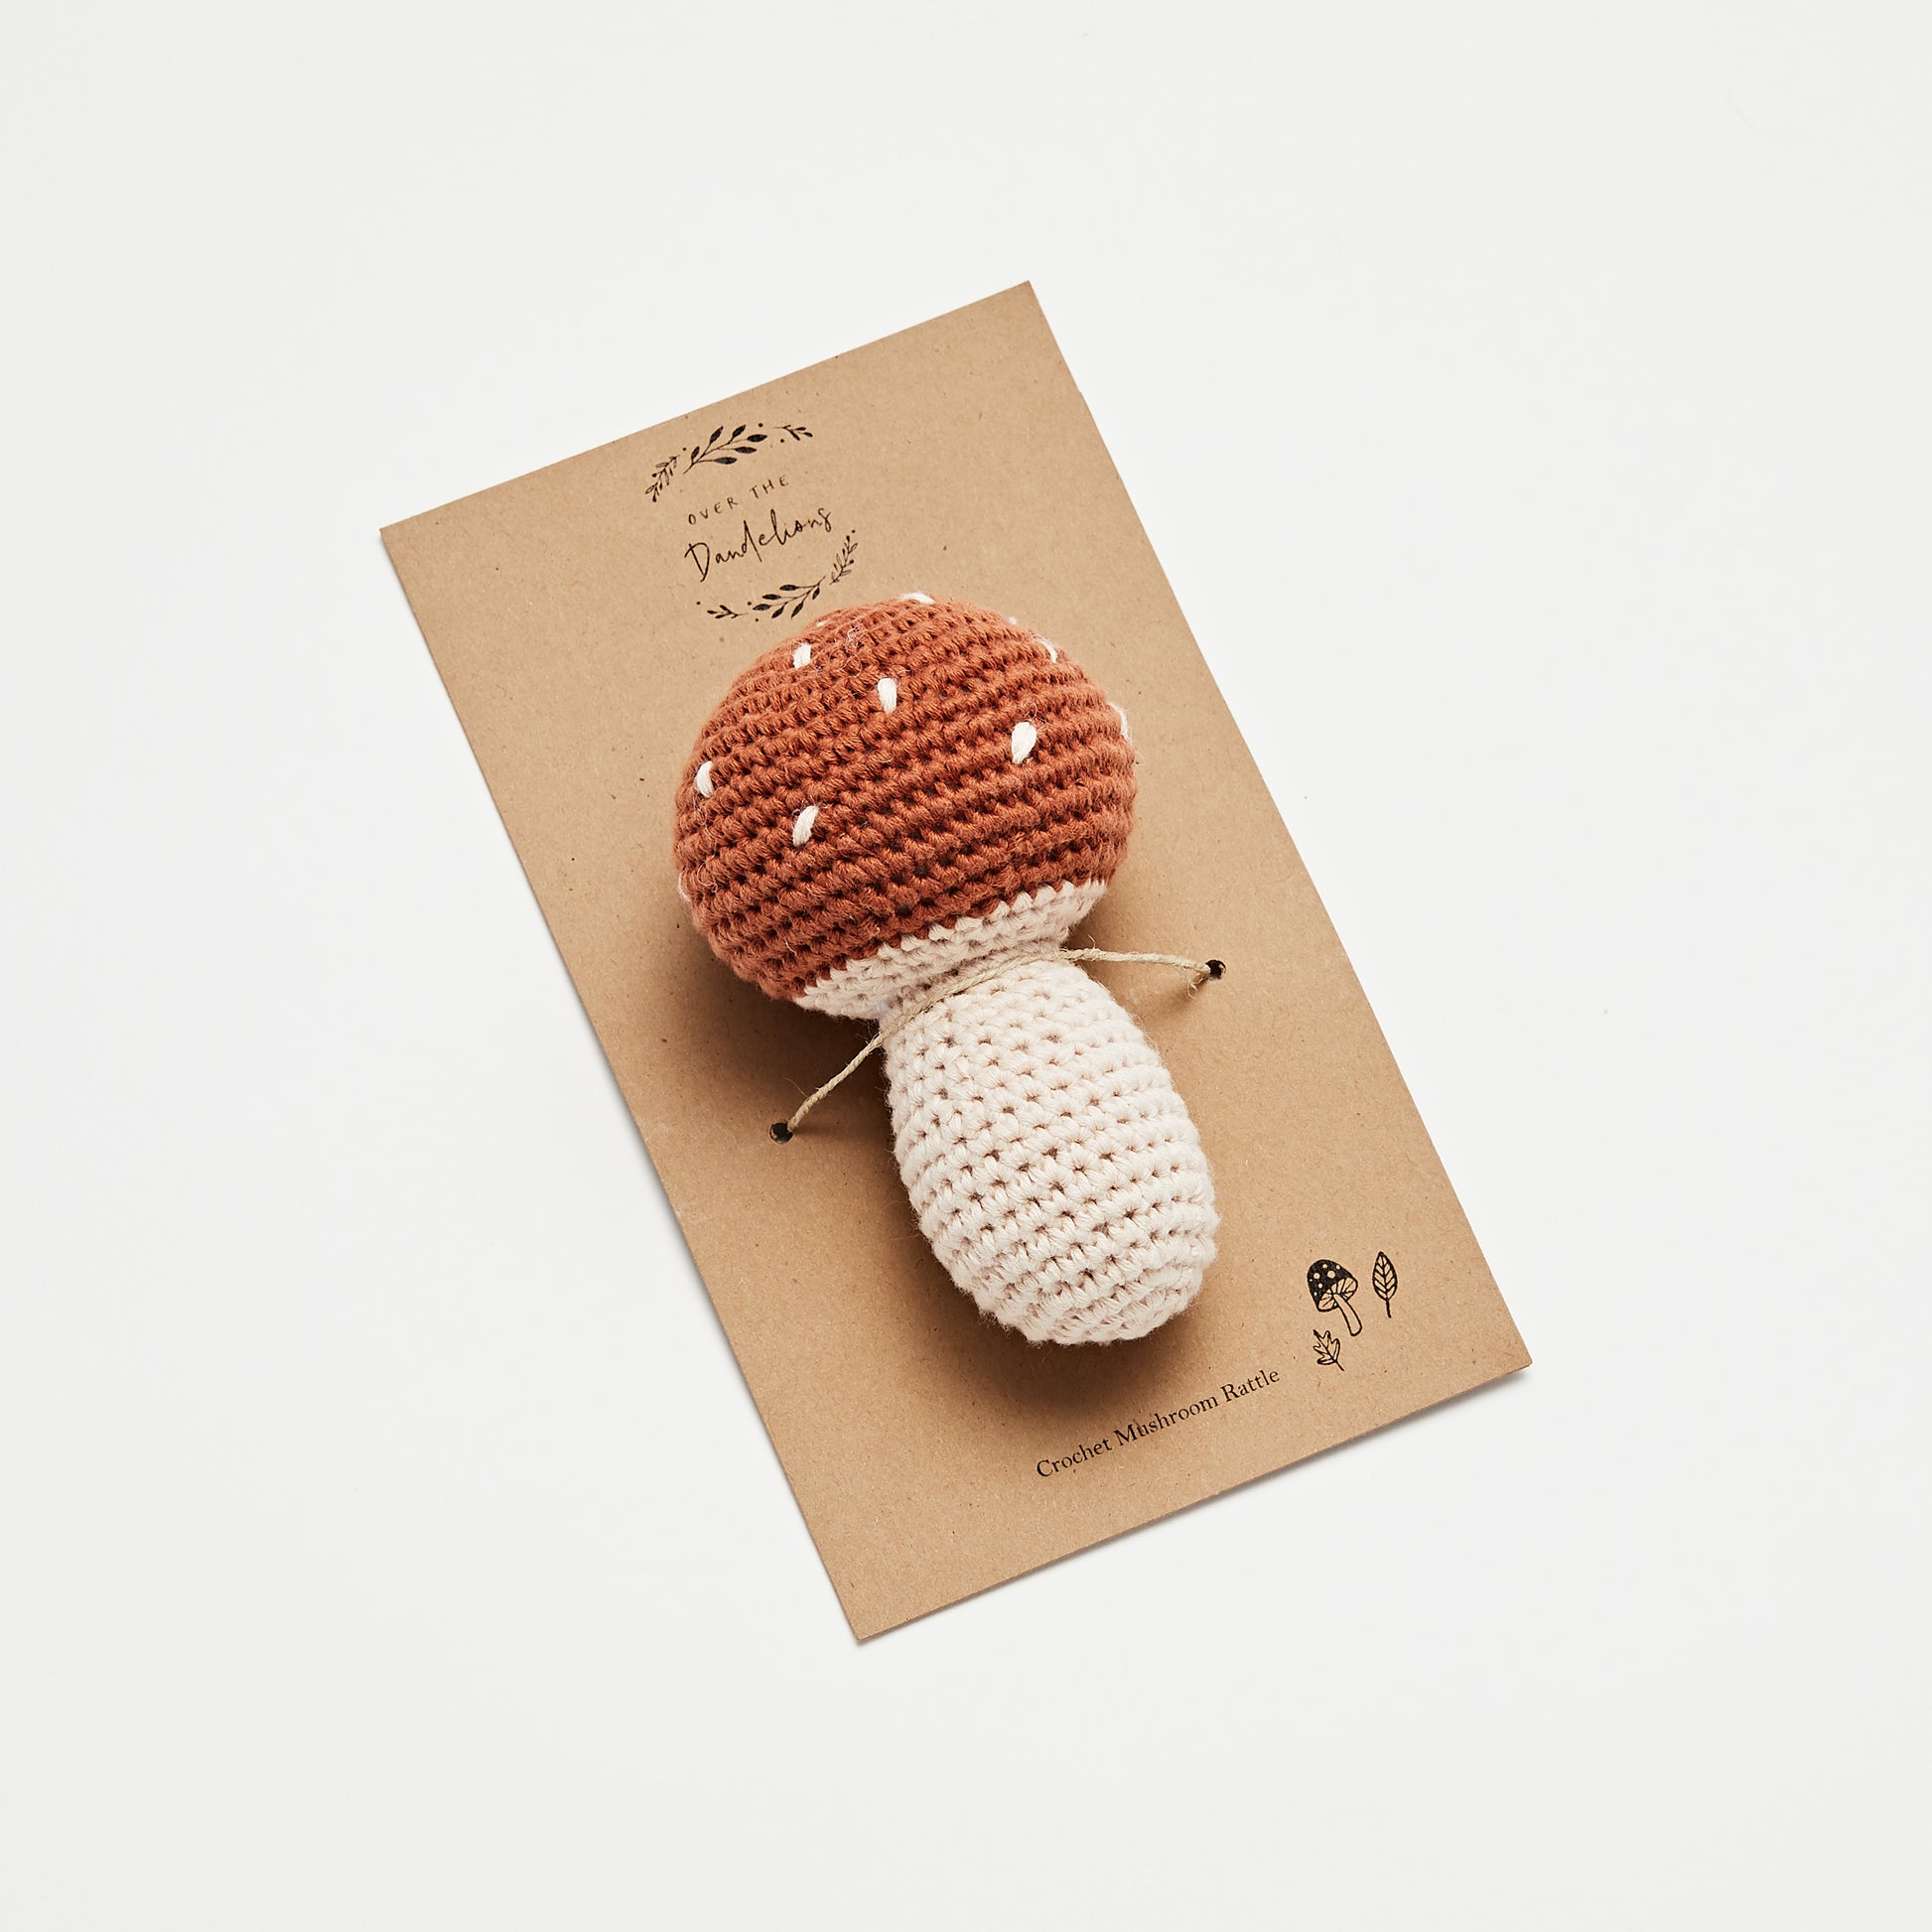 Crochet Mushroom Rattle - Little Reef and Friends